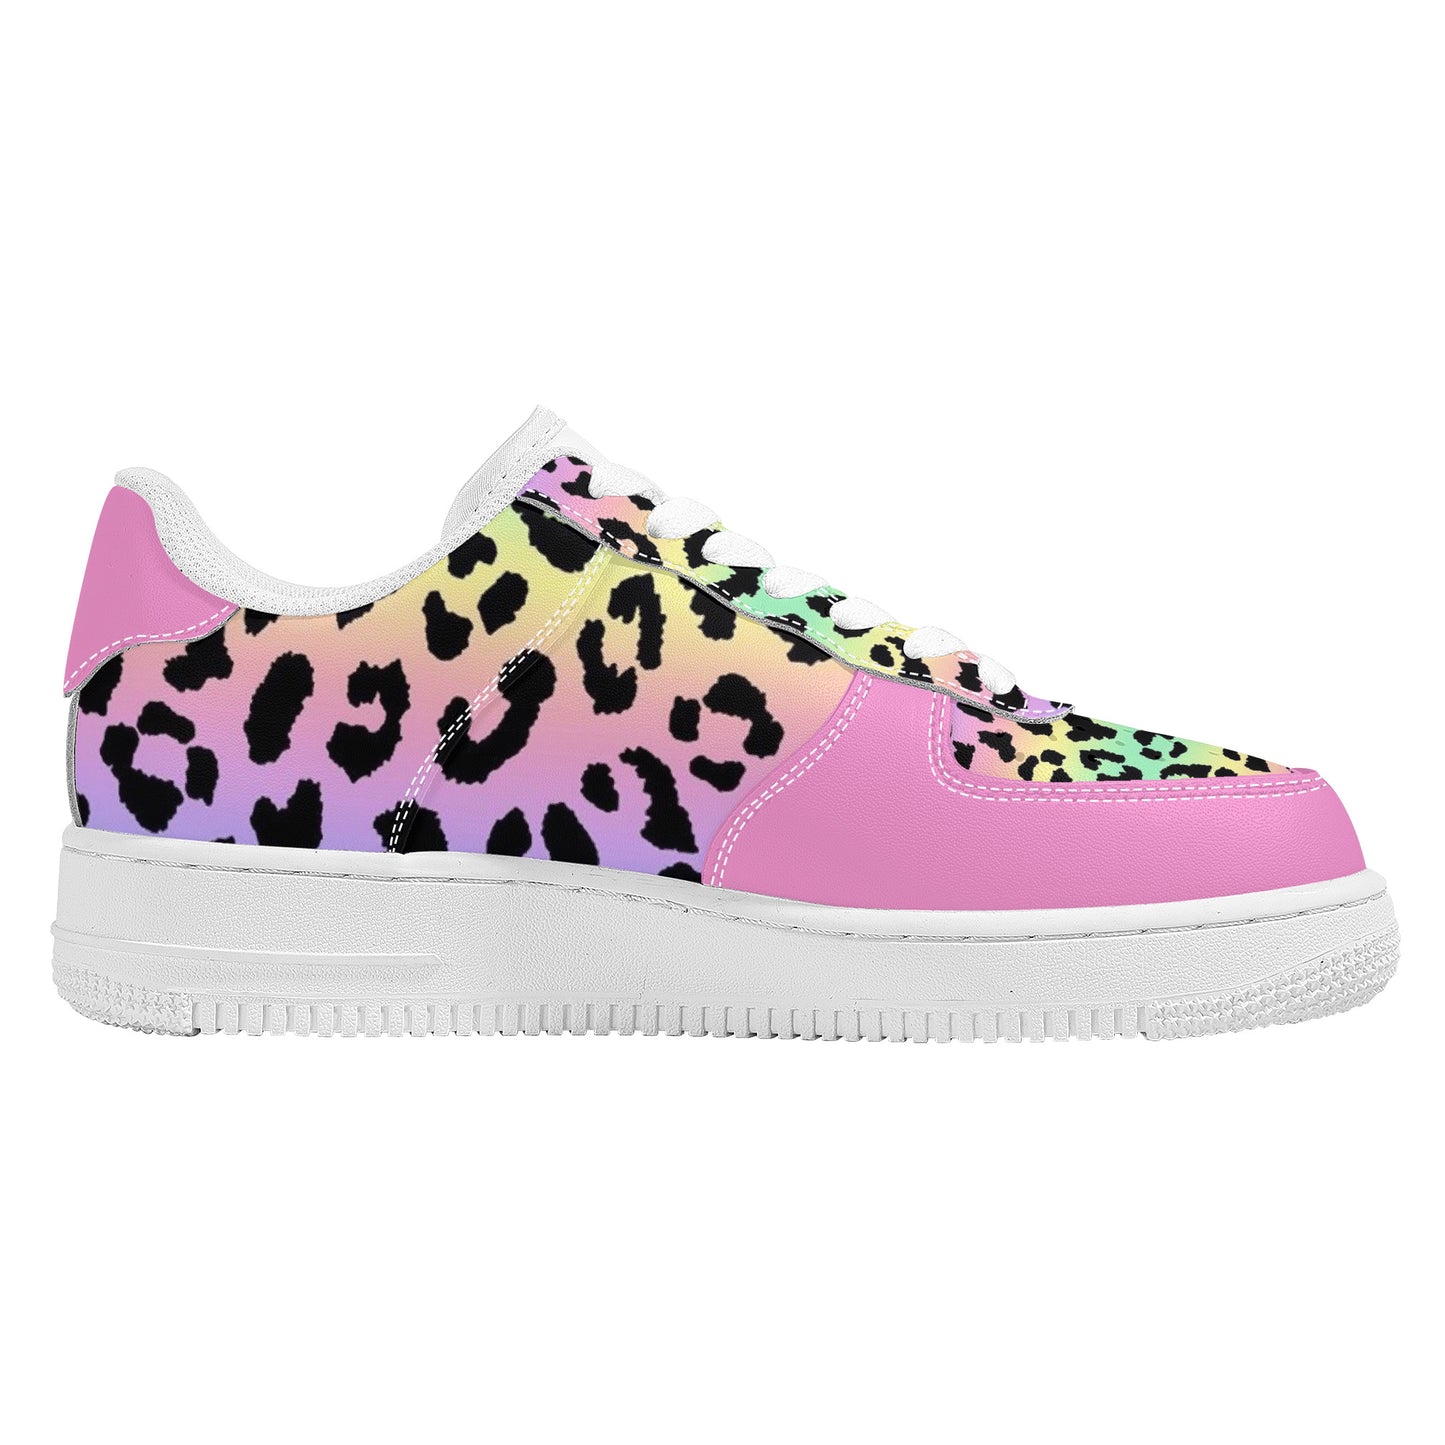 Low Top Unisex Sneaker - Pink